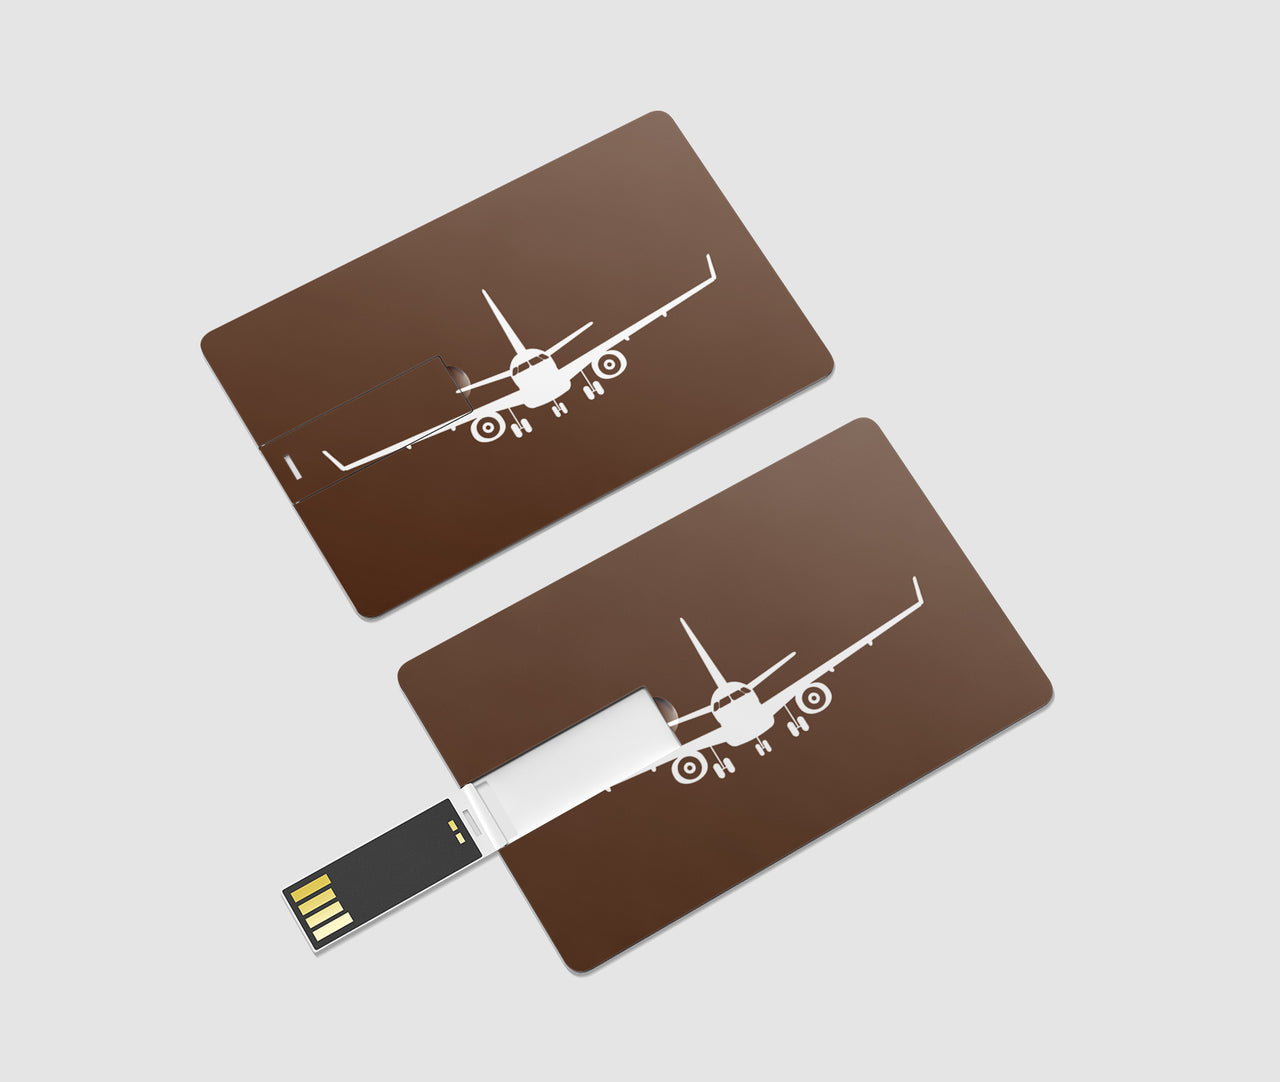 Embraer E-190 Silhouette Plane Designed USB Cards